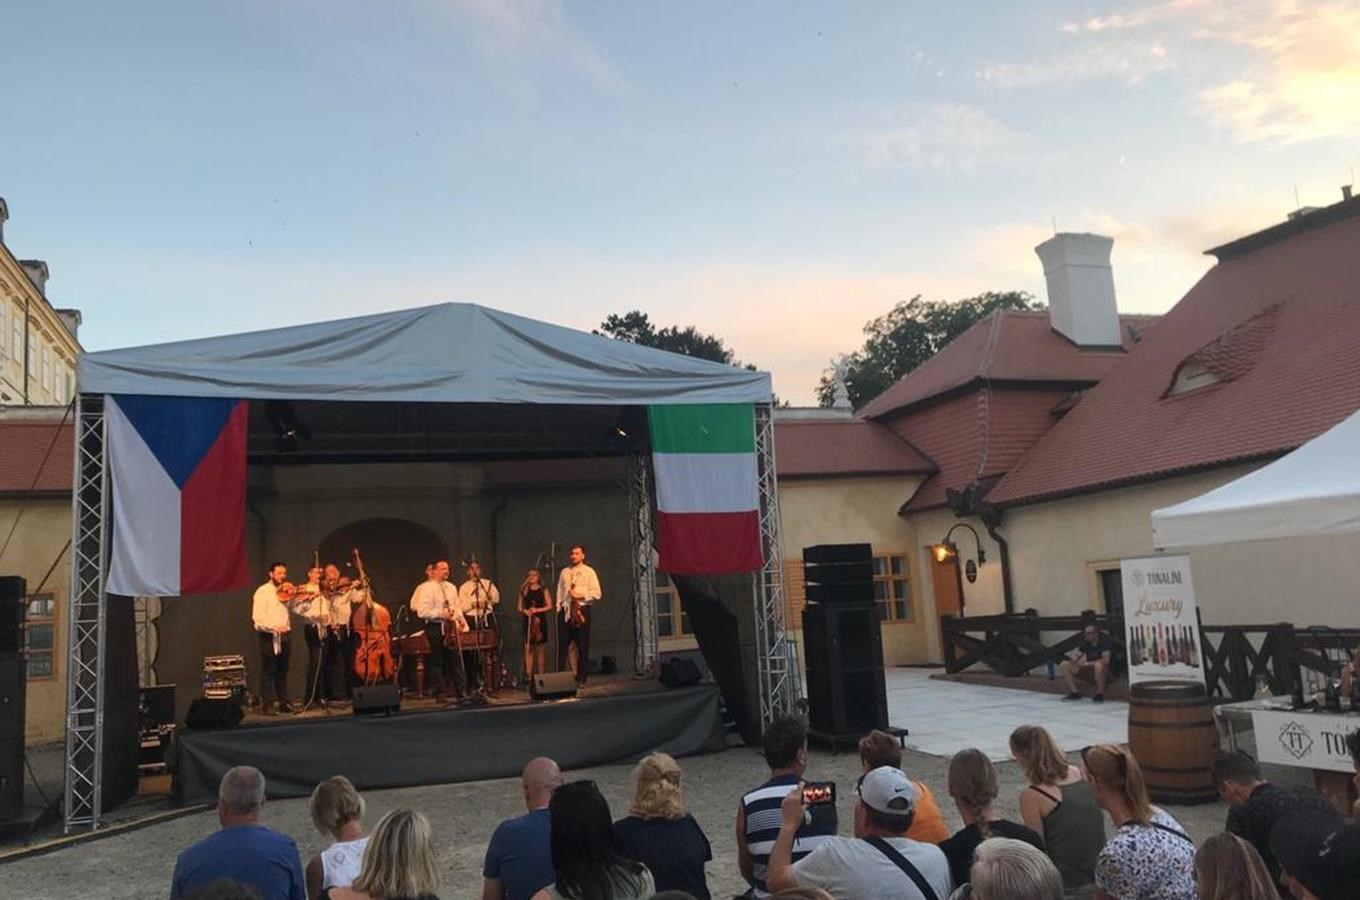 Letní pití vína & gastro festival na nádvoří zámku Valtice aneb Valtice po italsku